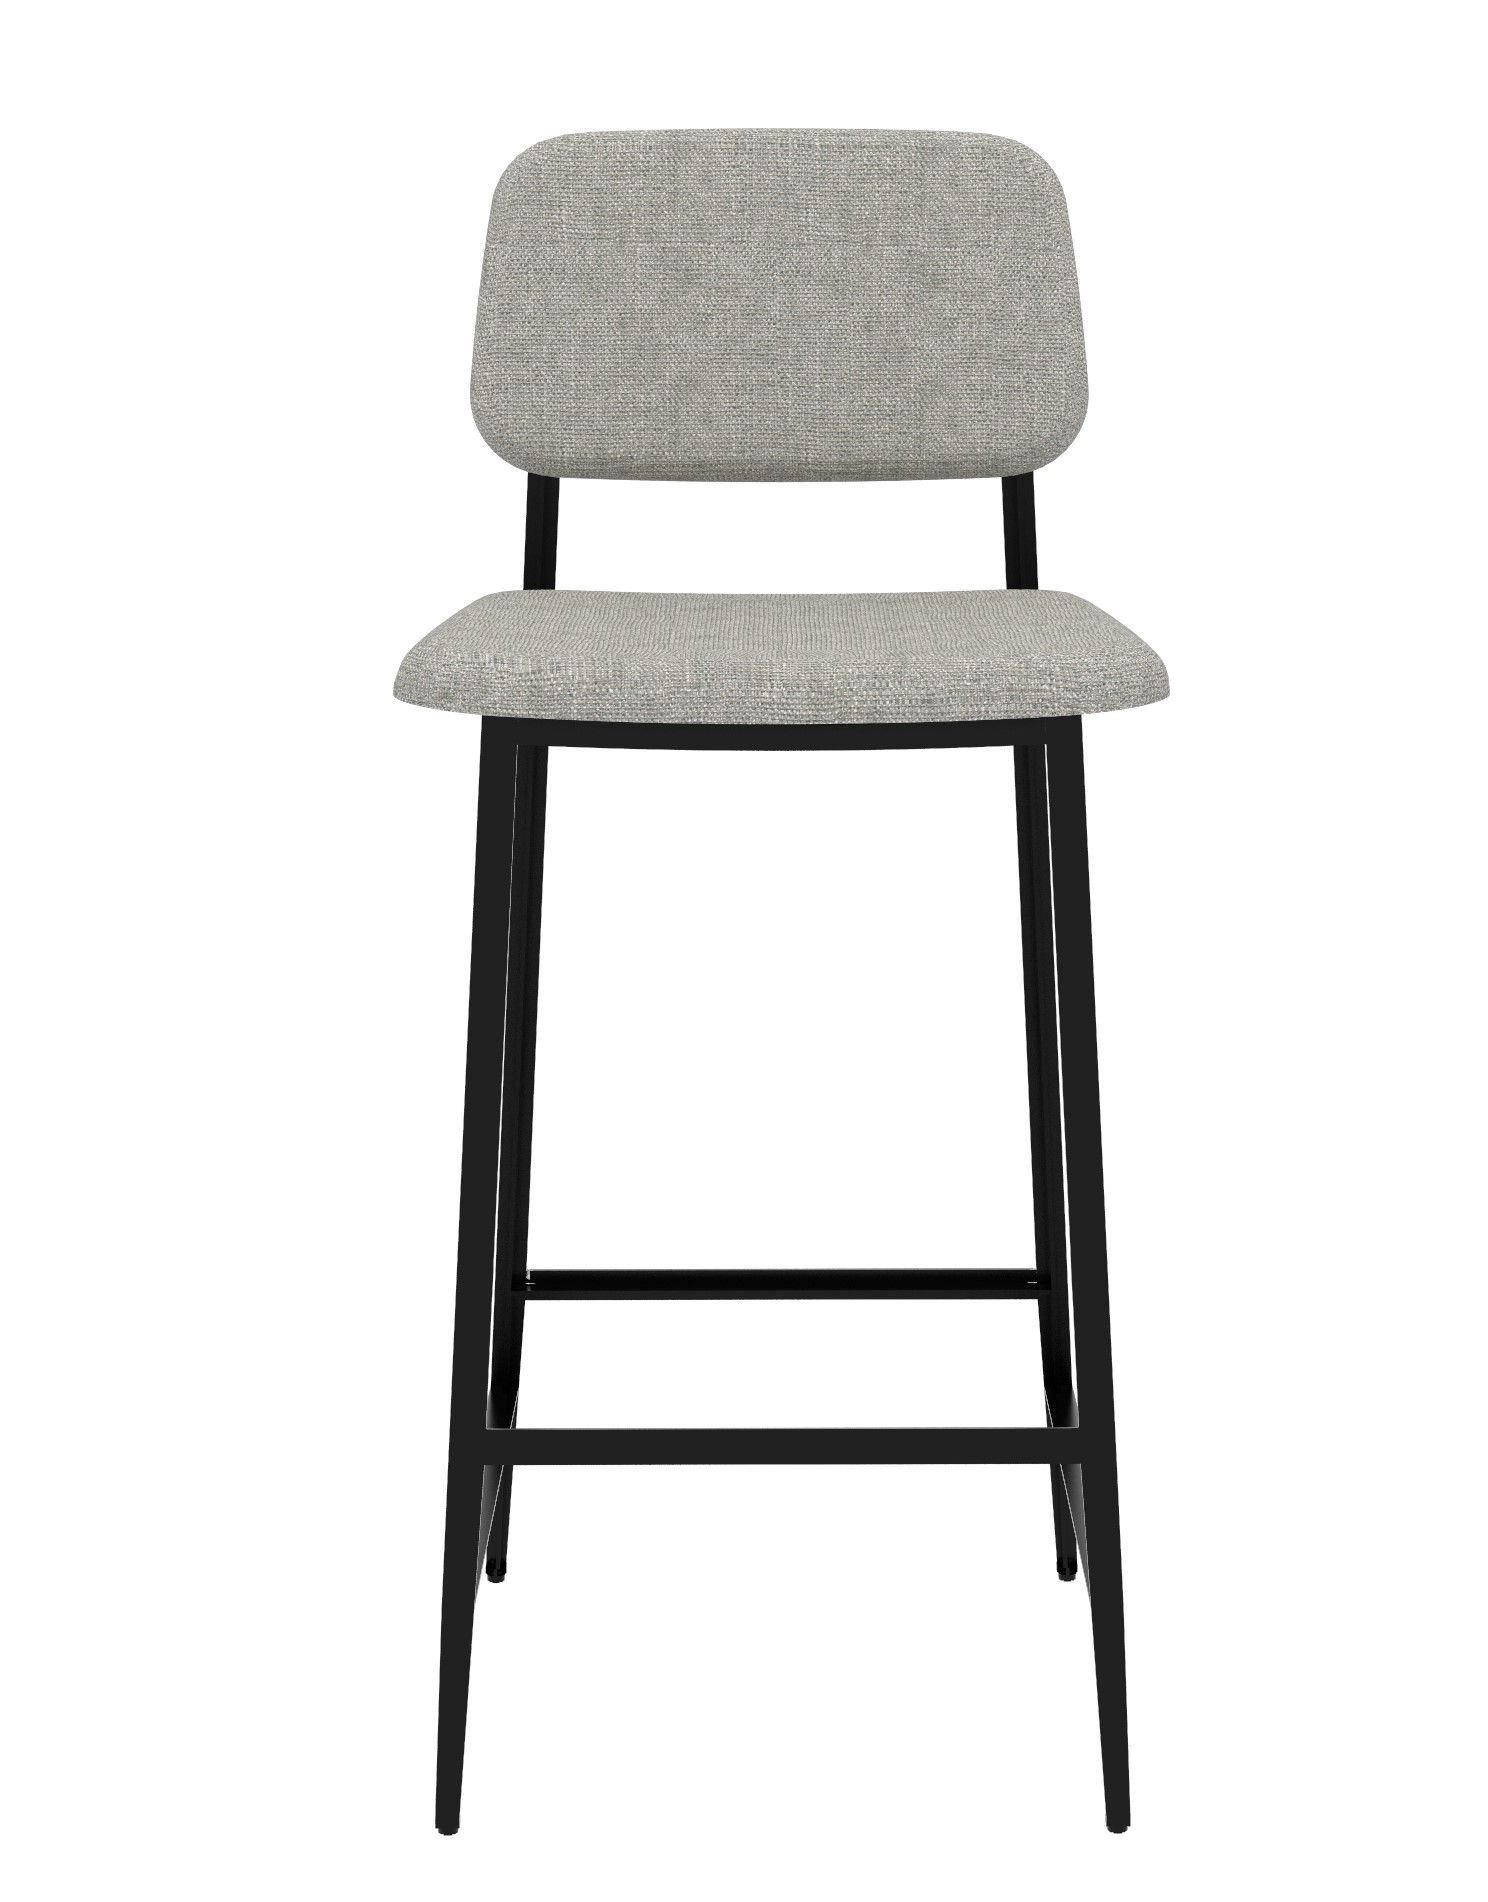 Výprodej Designové barové židle DC Stool - DESIGNPROPAGANDA